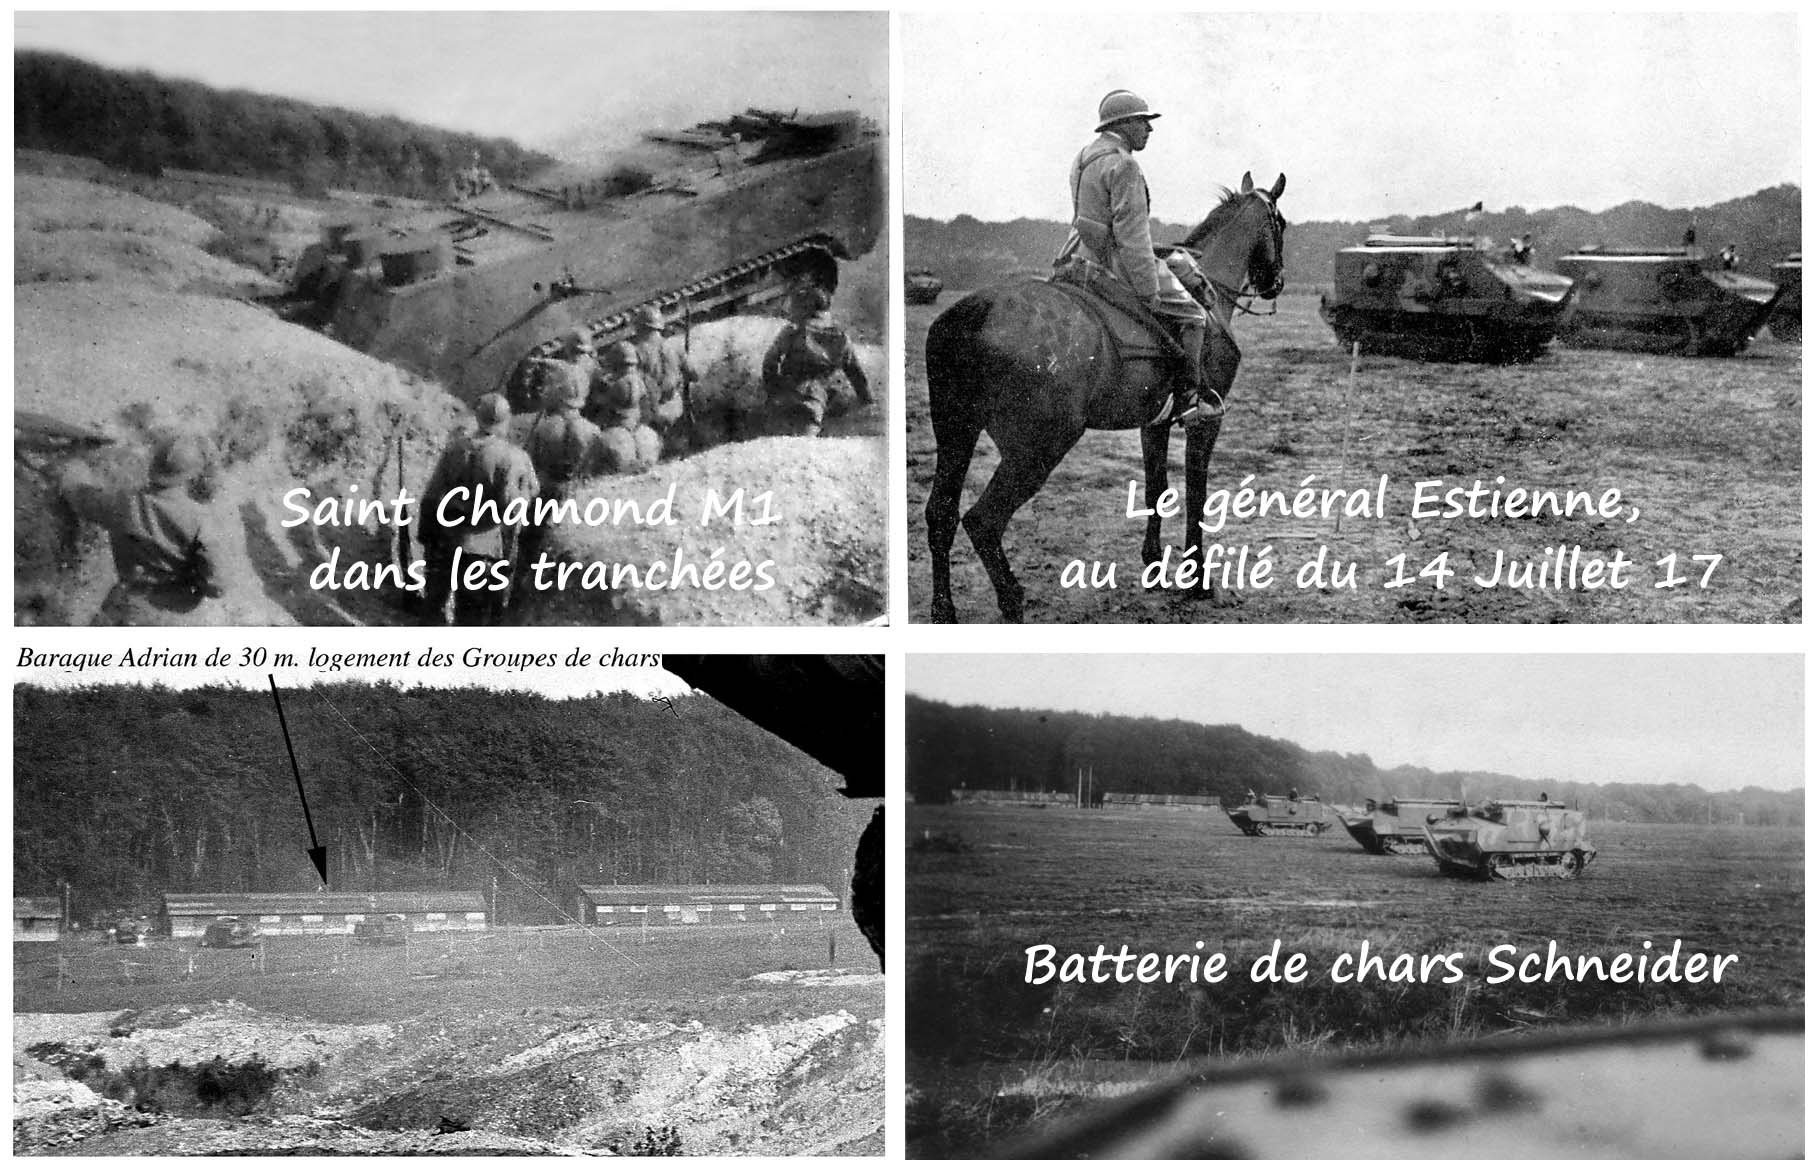 08 - Champlieu - Saint Chamond M1  sur tranchée (01a).jpg